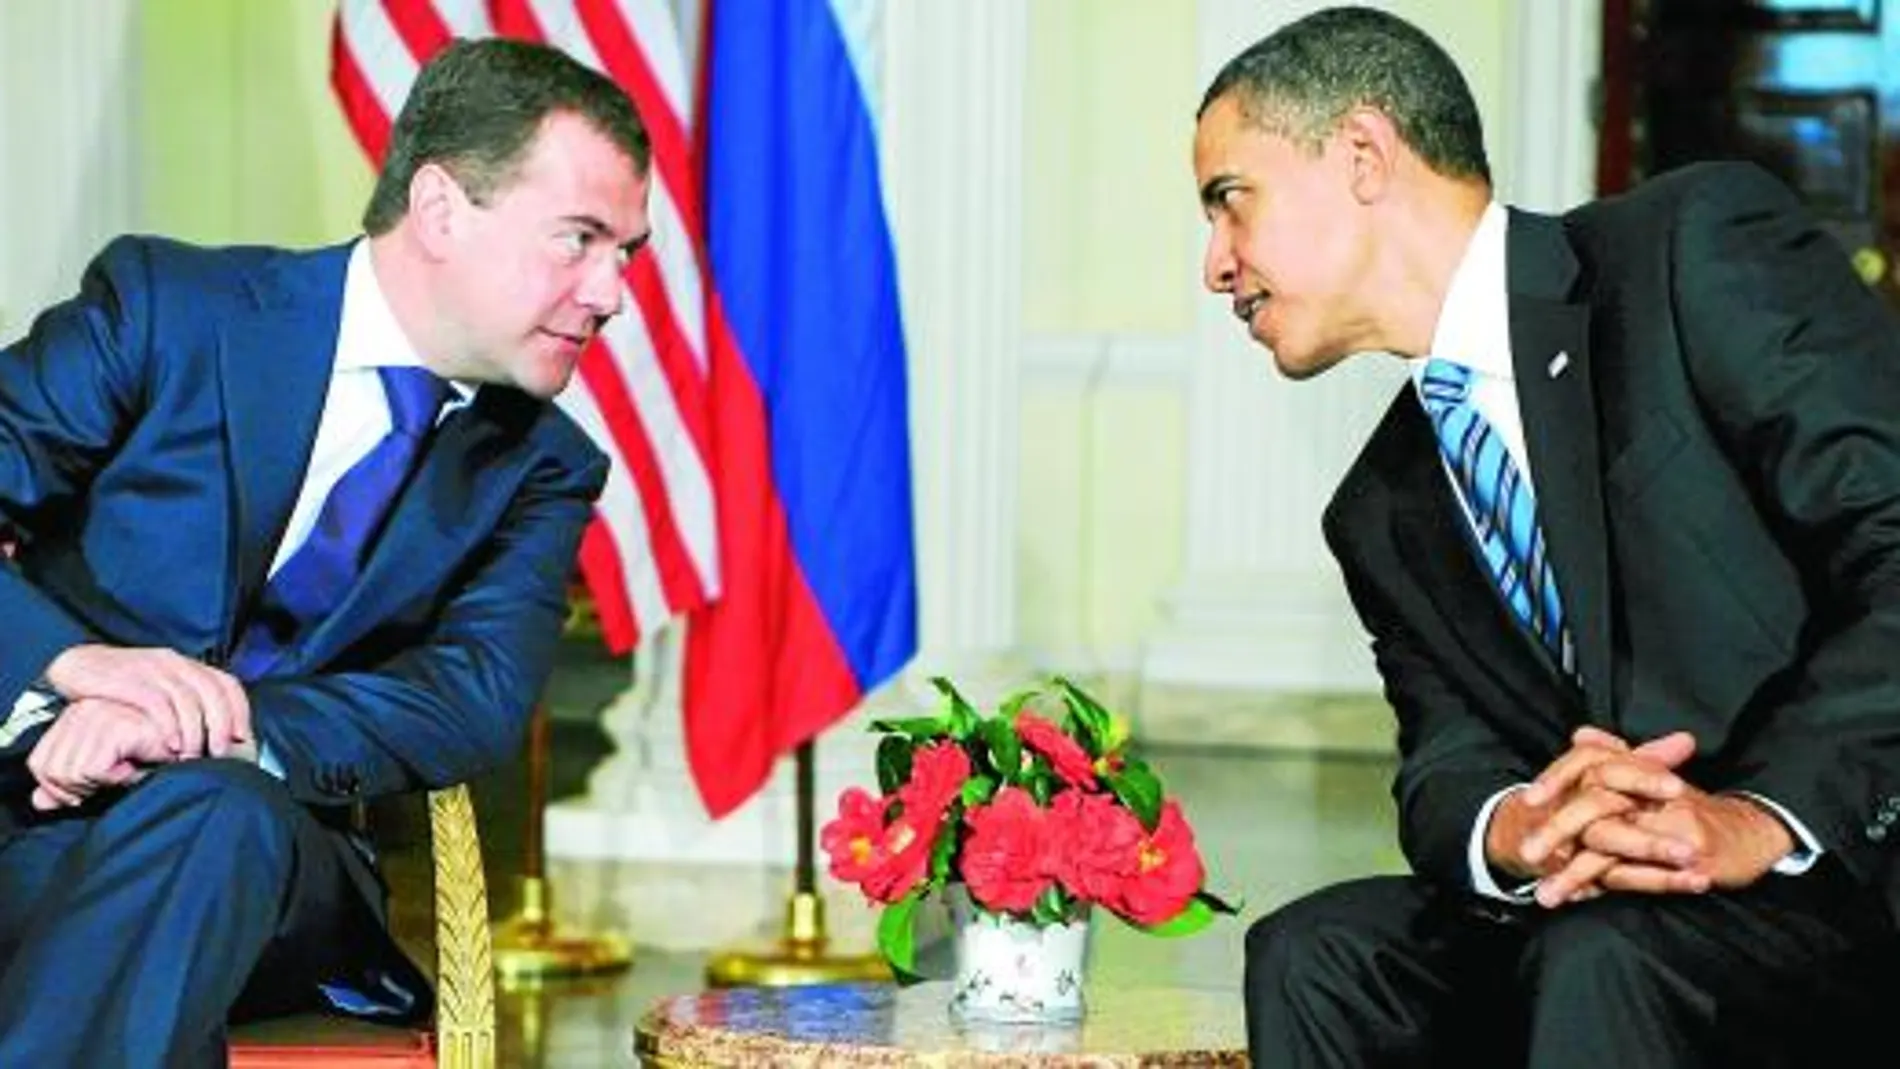 El presidente Barack Obama llegará hoy por la tarde a Rusia